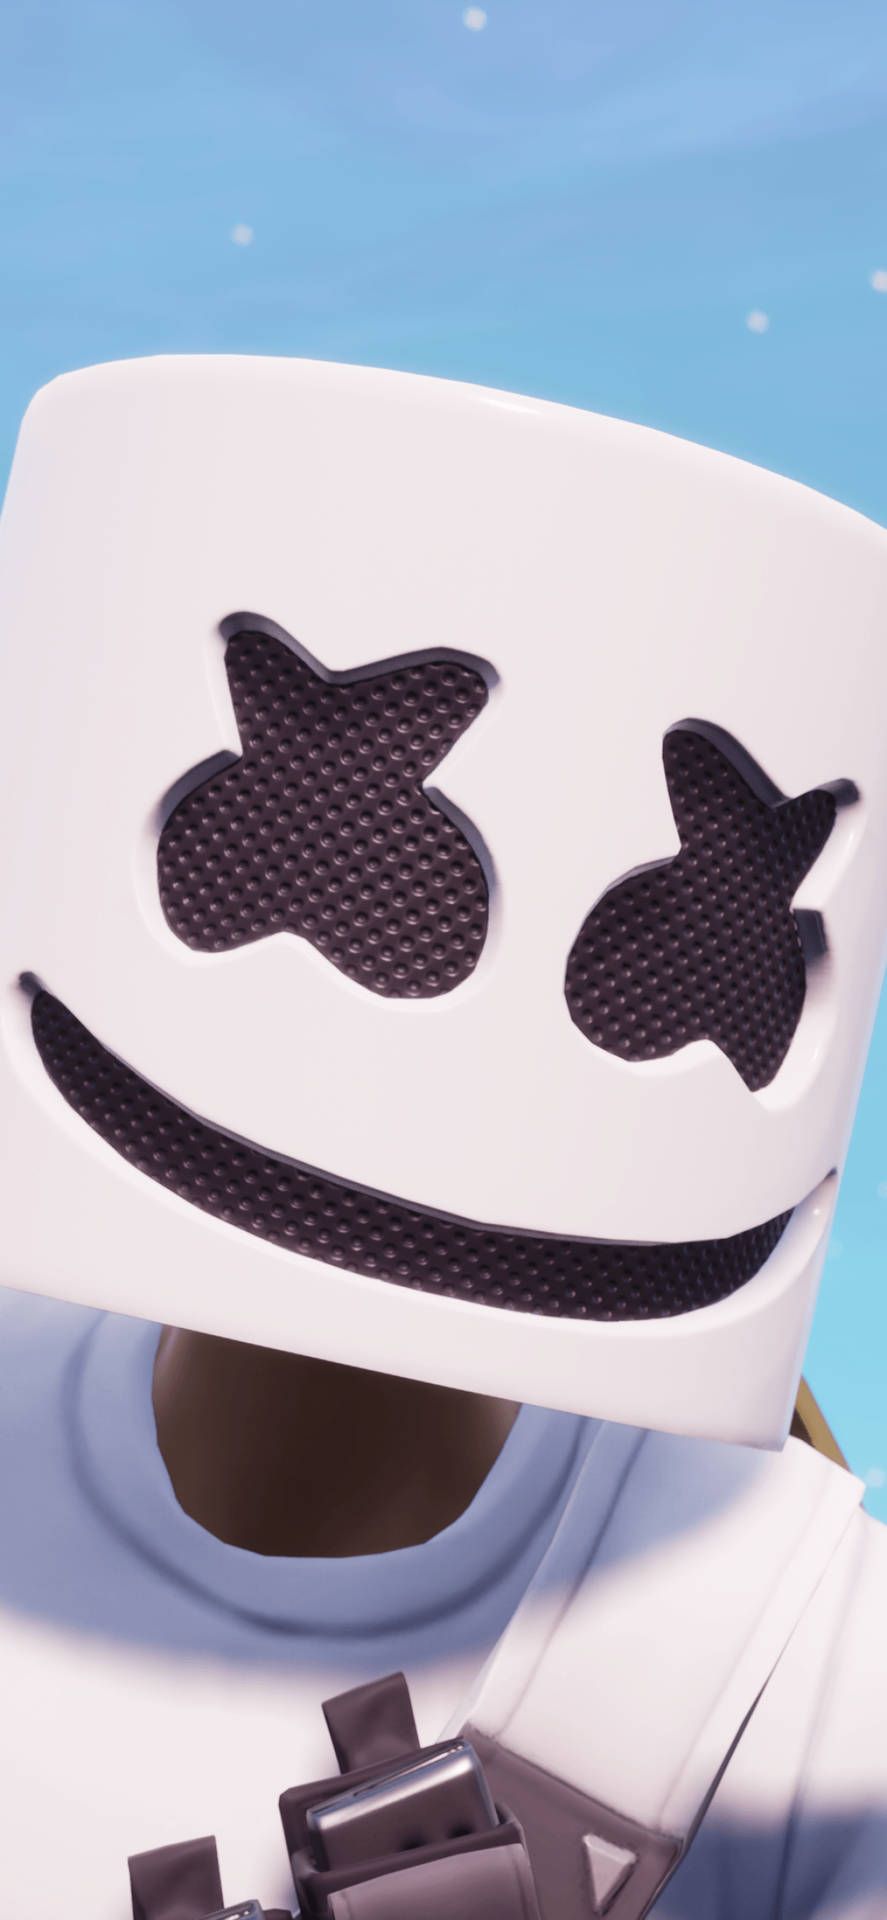 Marshmello Fortnite Wallpaper for iPhone. - Marshmello